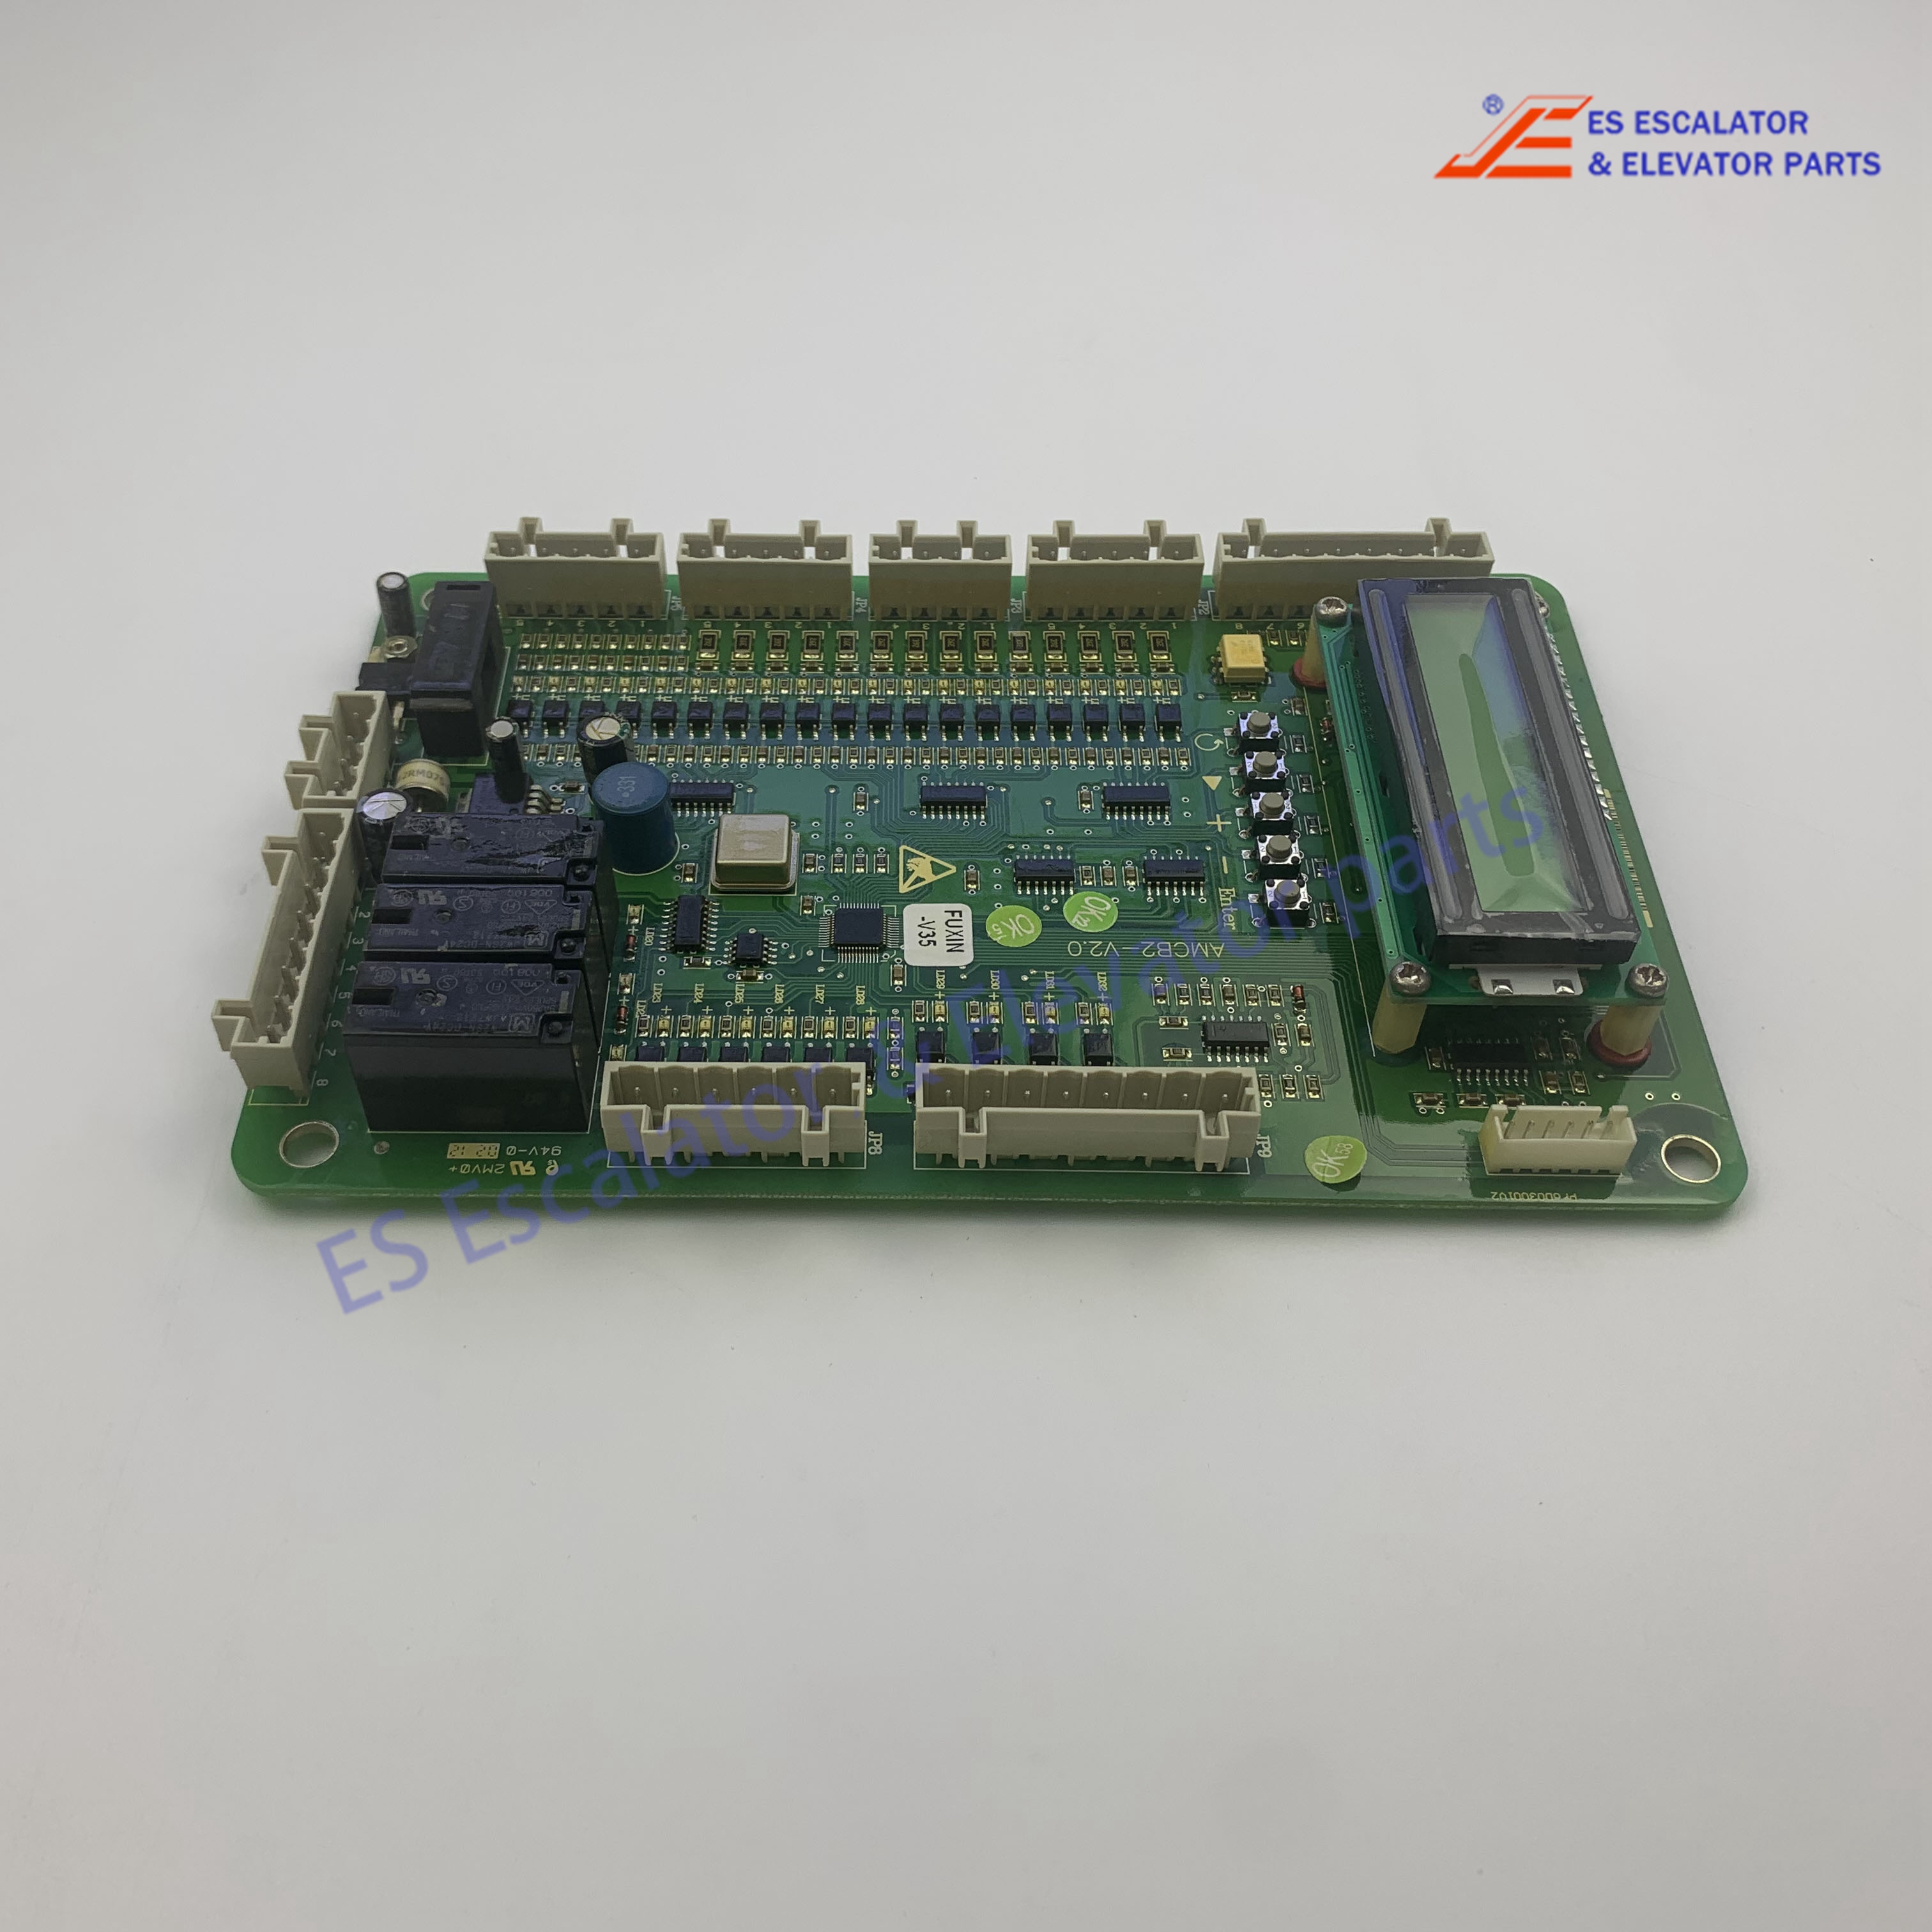 AMCB2 Elevator PCB Board Drive Board -V2.0 V1.0 V3.5 Use For Otis